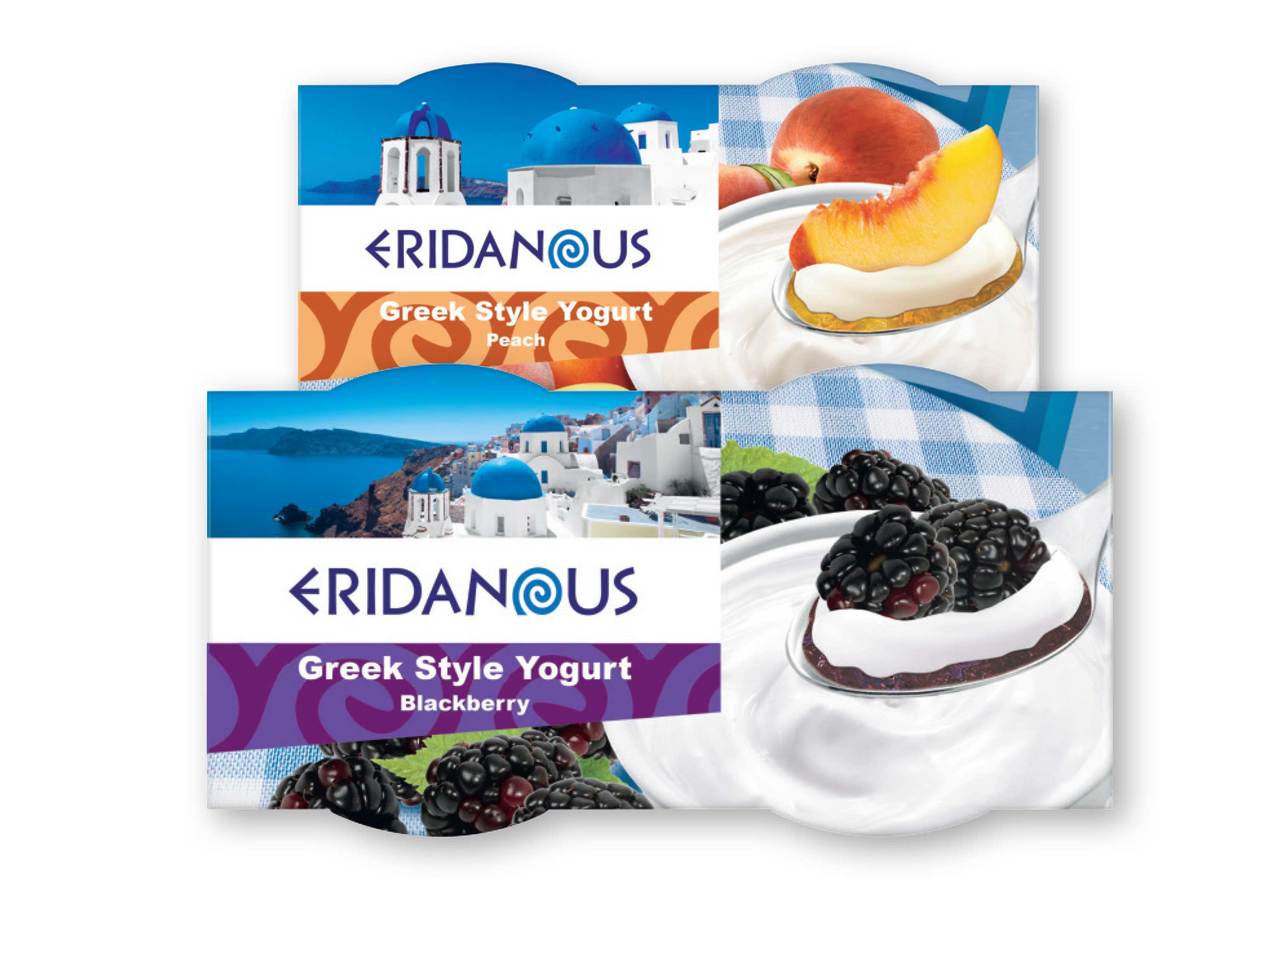 ERIDANOUS Greek Style Fruit Yogurts